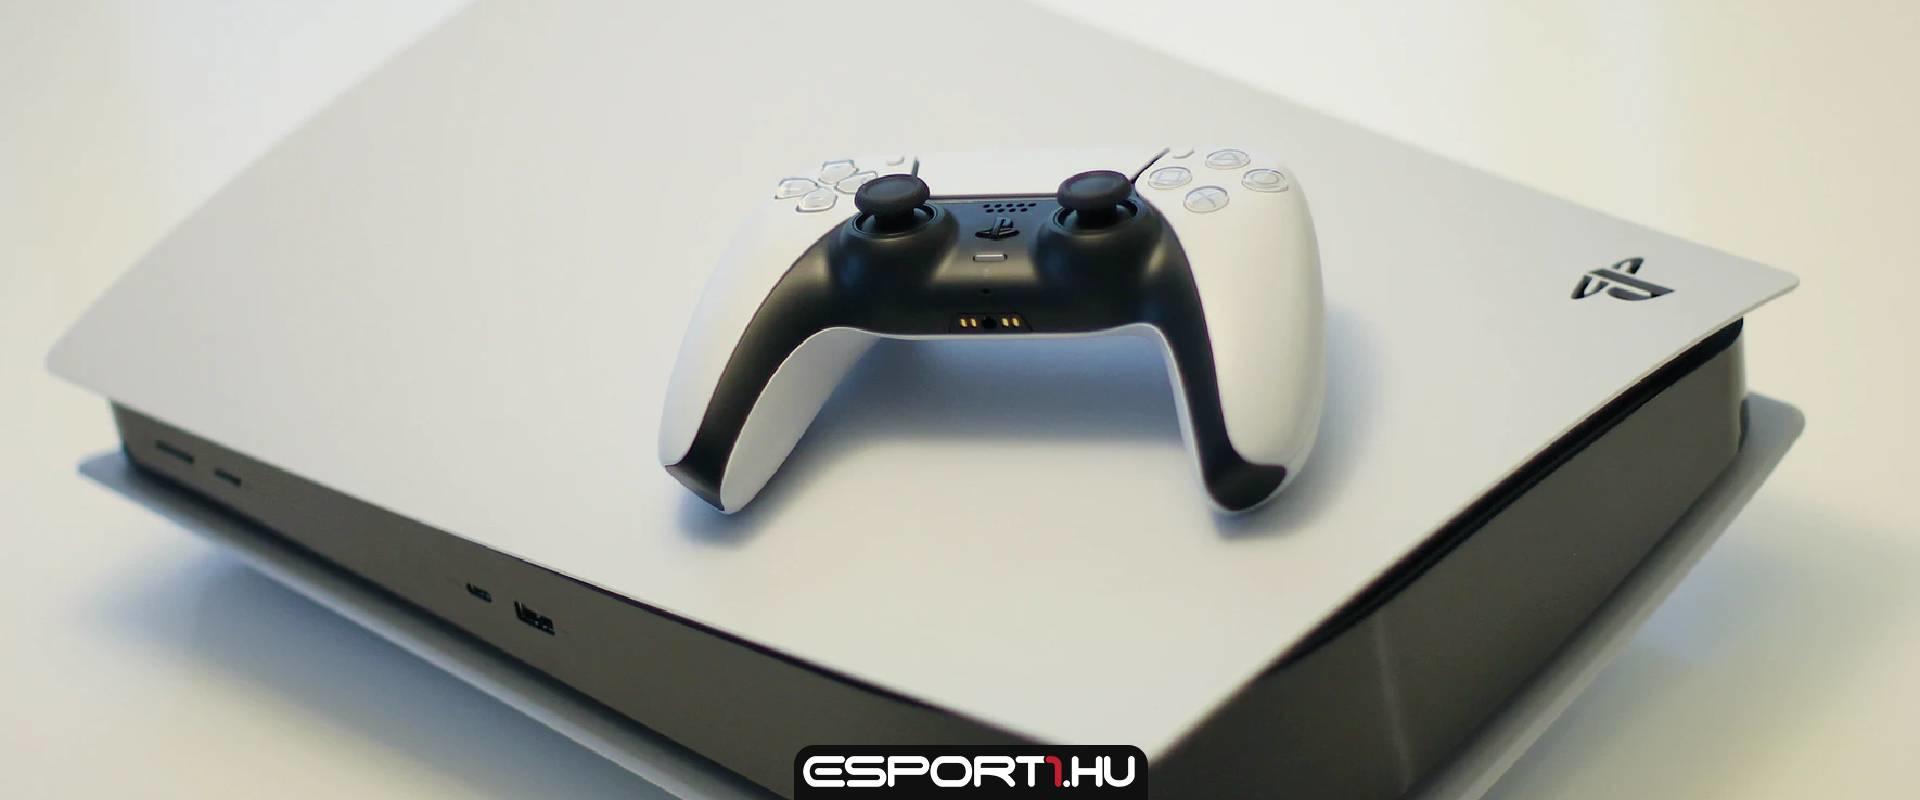 Új Pro kontroller készül PS5-höz, melyet hamarosan be is mutathatnak